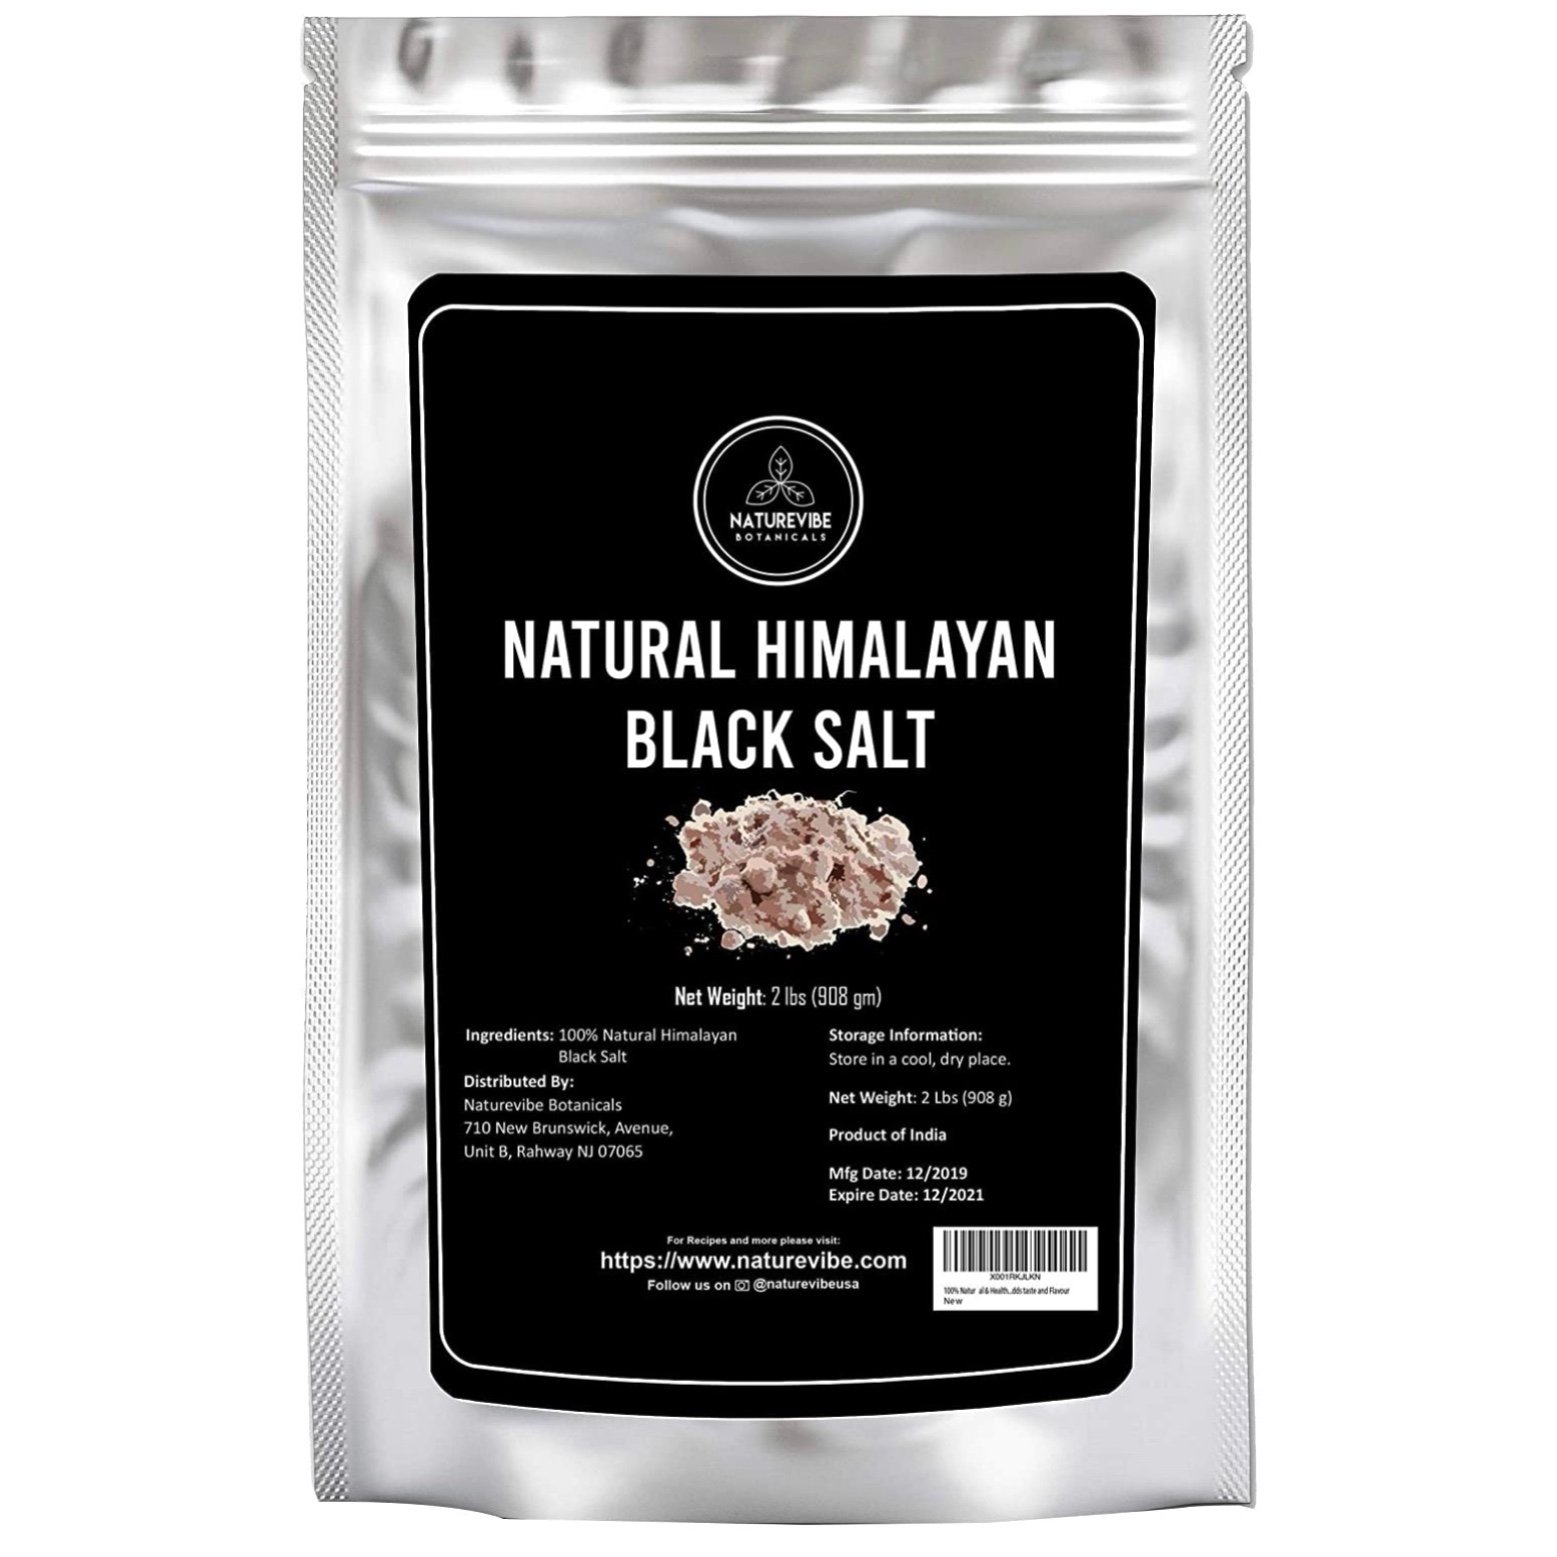 Himalayan black salt